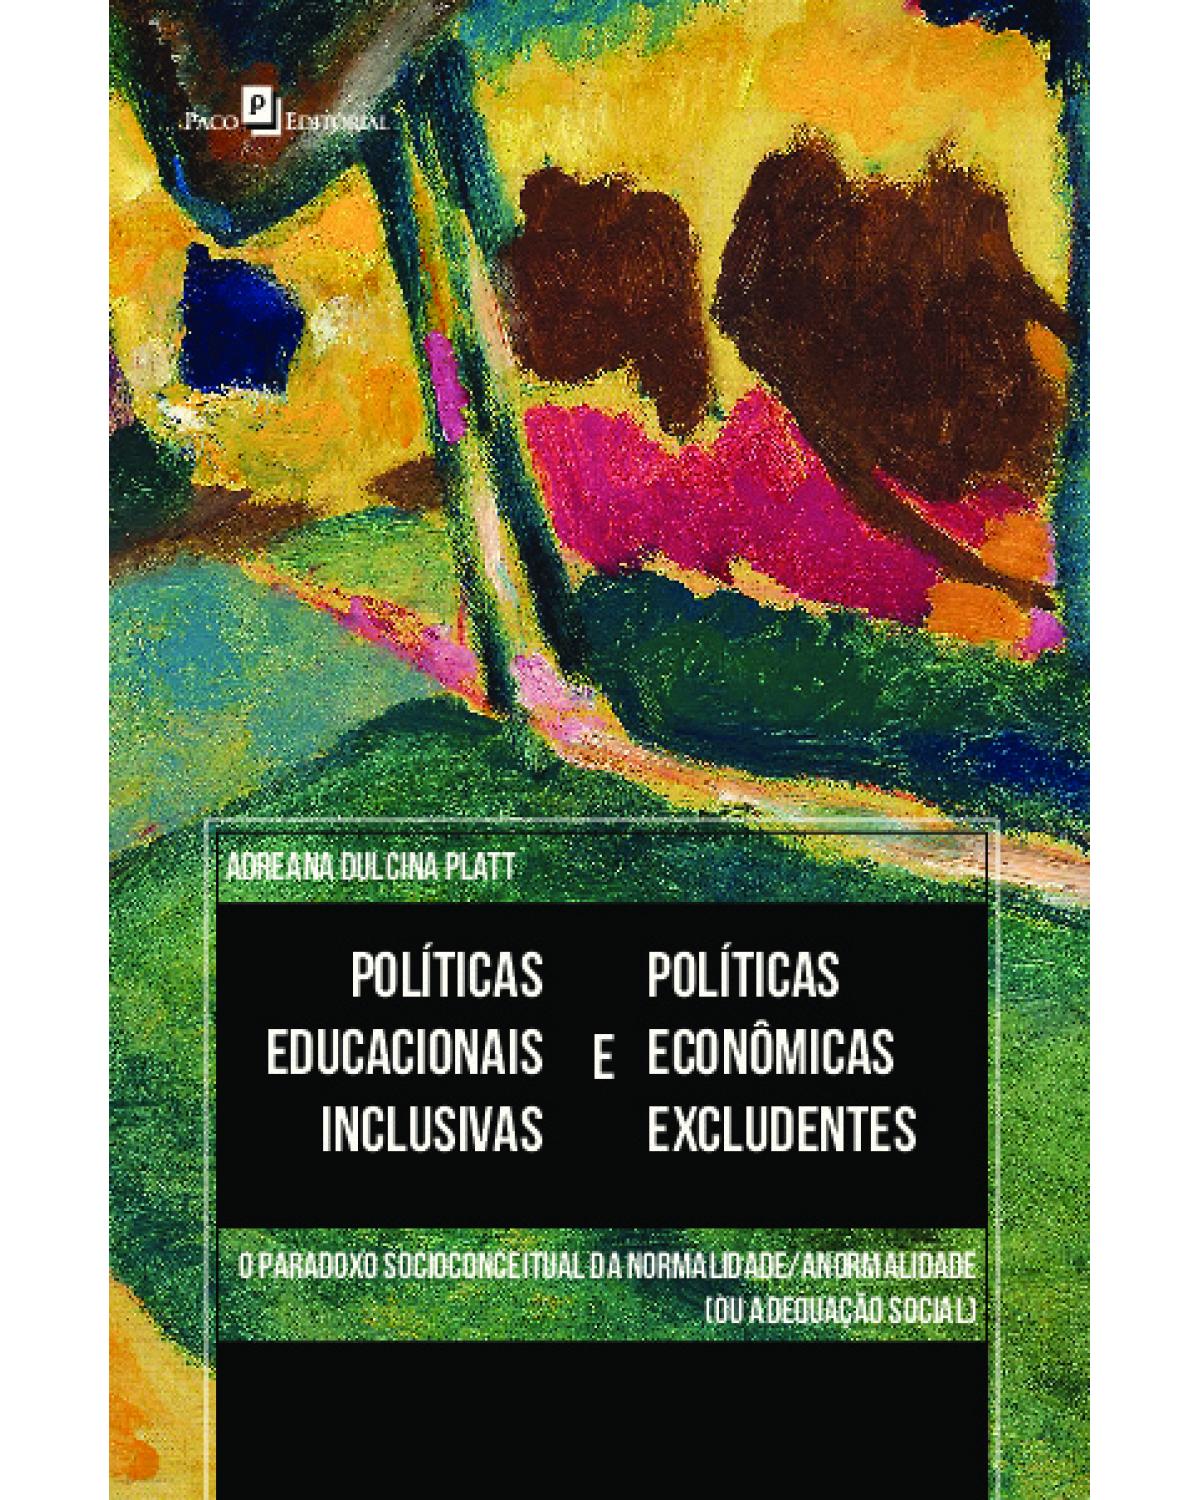 Políticas educacionais inclusivas e políticas econômicas excludentes - o paradoxo socioconceitual da normalidade/anormalidade (ou adequação social) - 1ª Edição | 2021